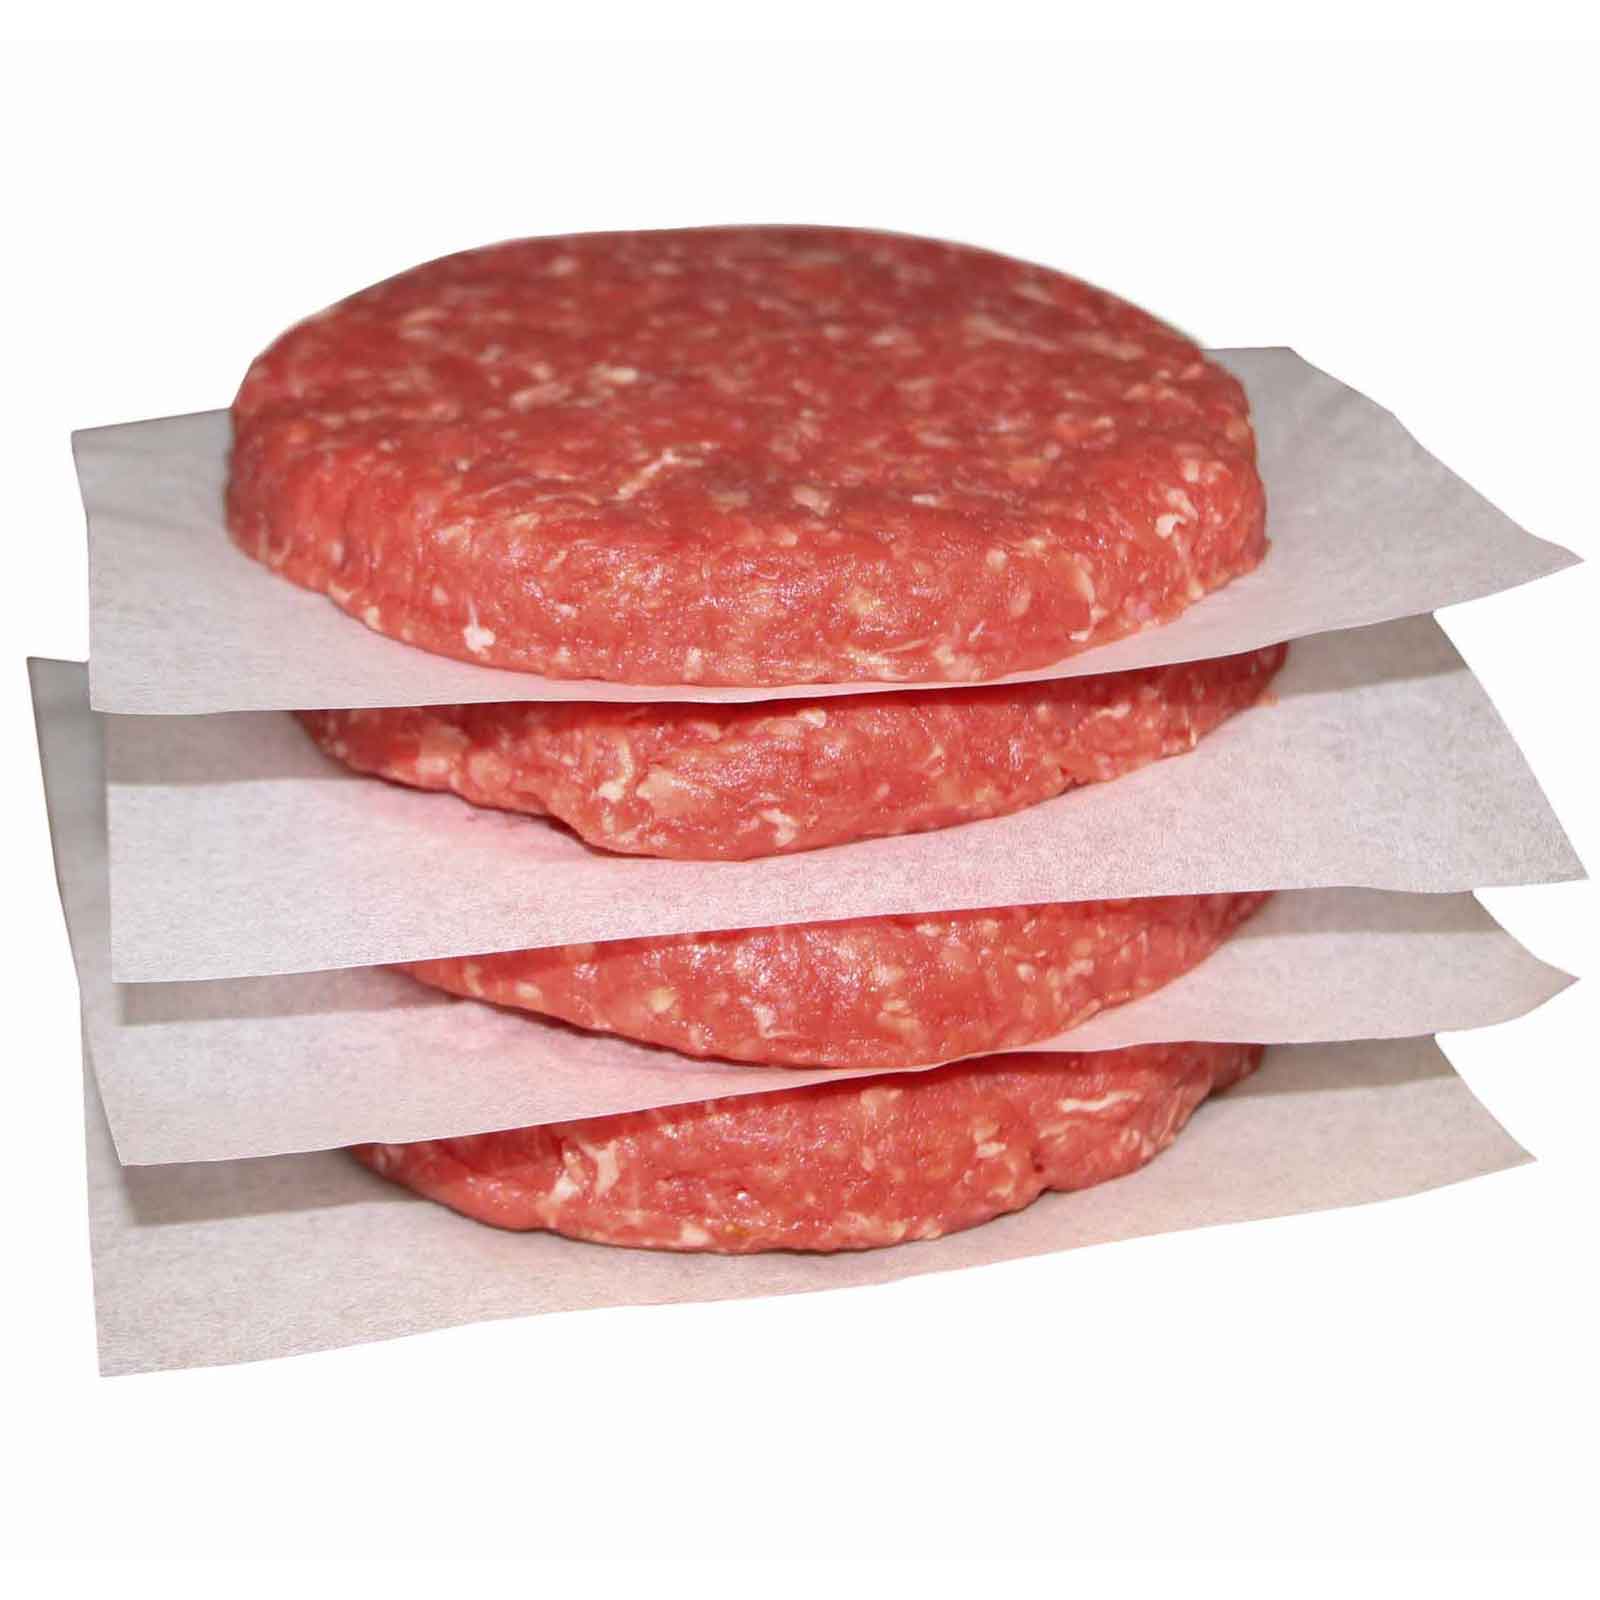 Feuillets Intercalaires de papier pour patie burger - 250pcs